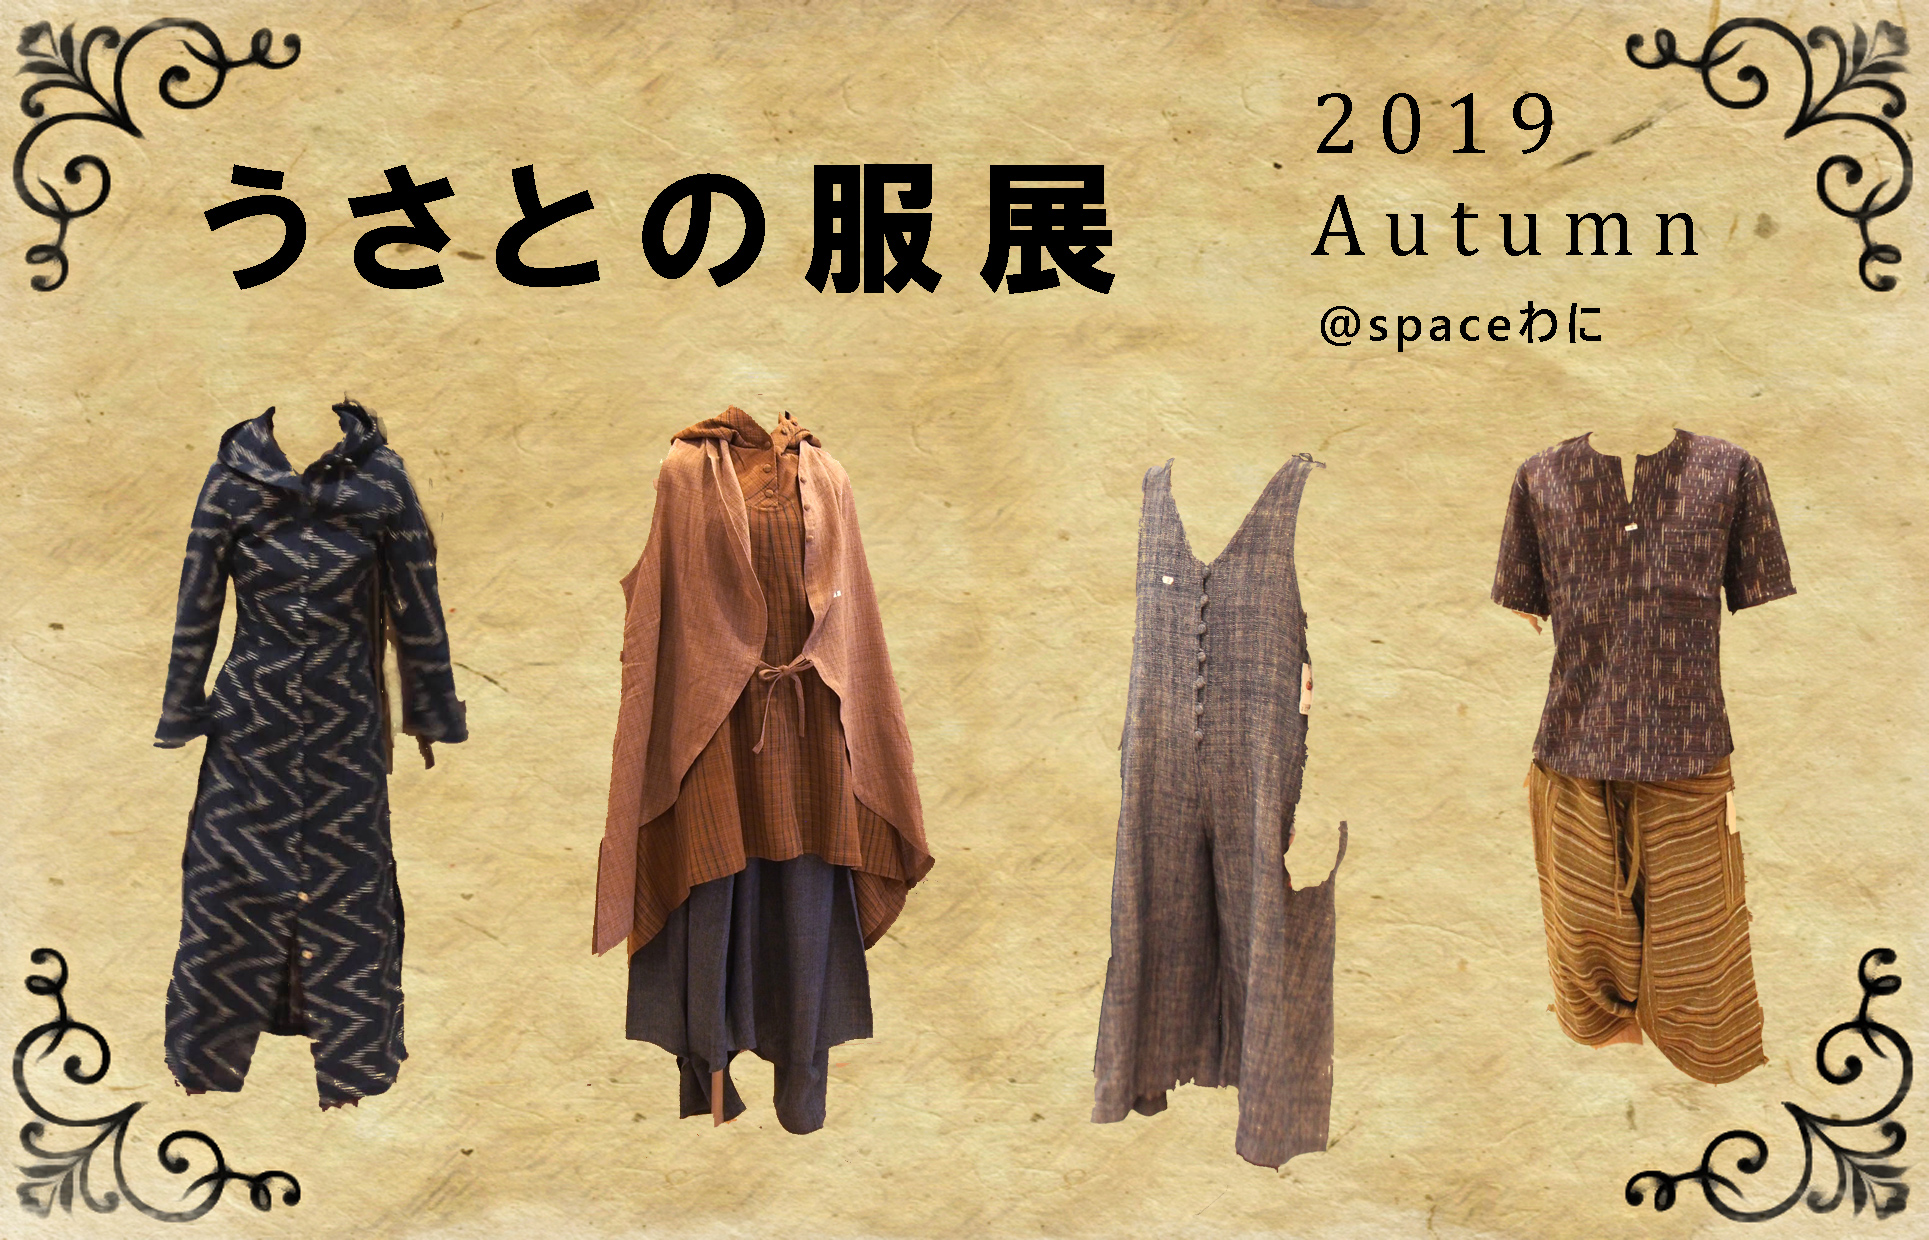 うさとの服展 2019 Autumn | 神戸のヨガスタジオ space わに